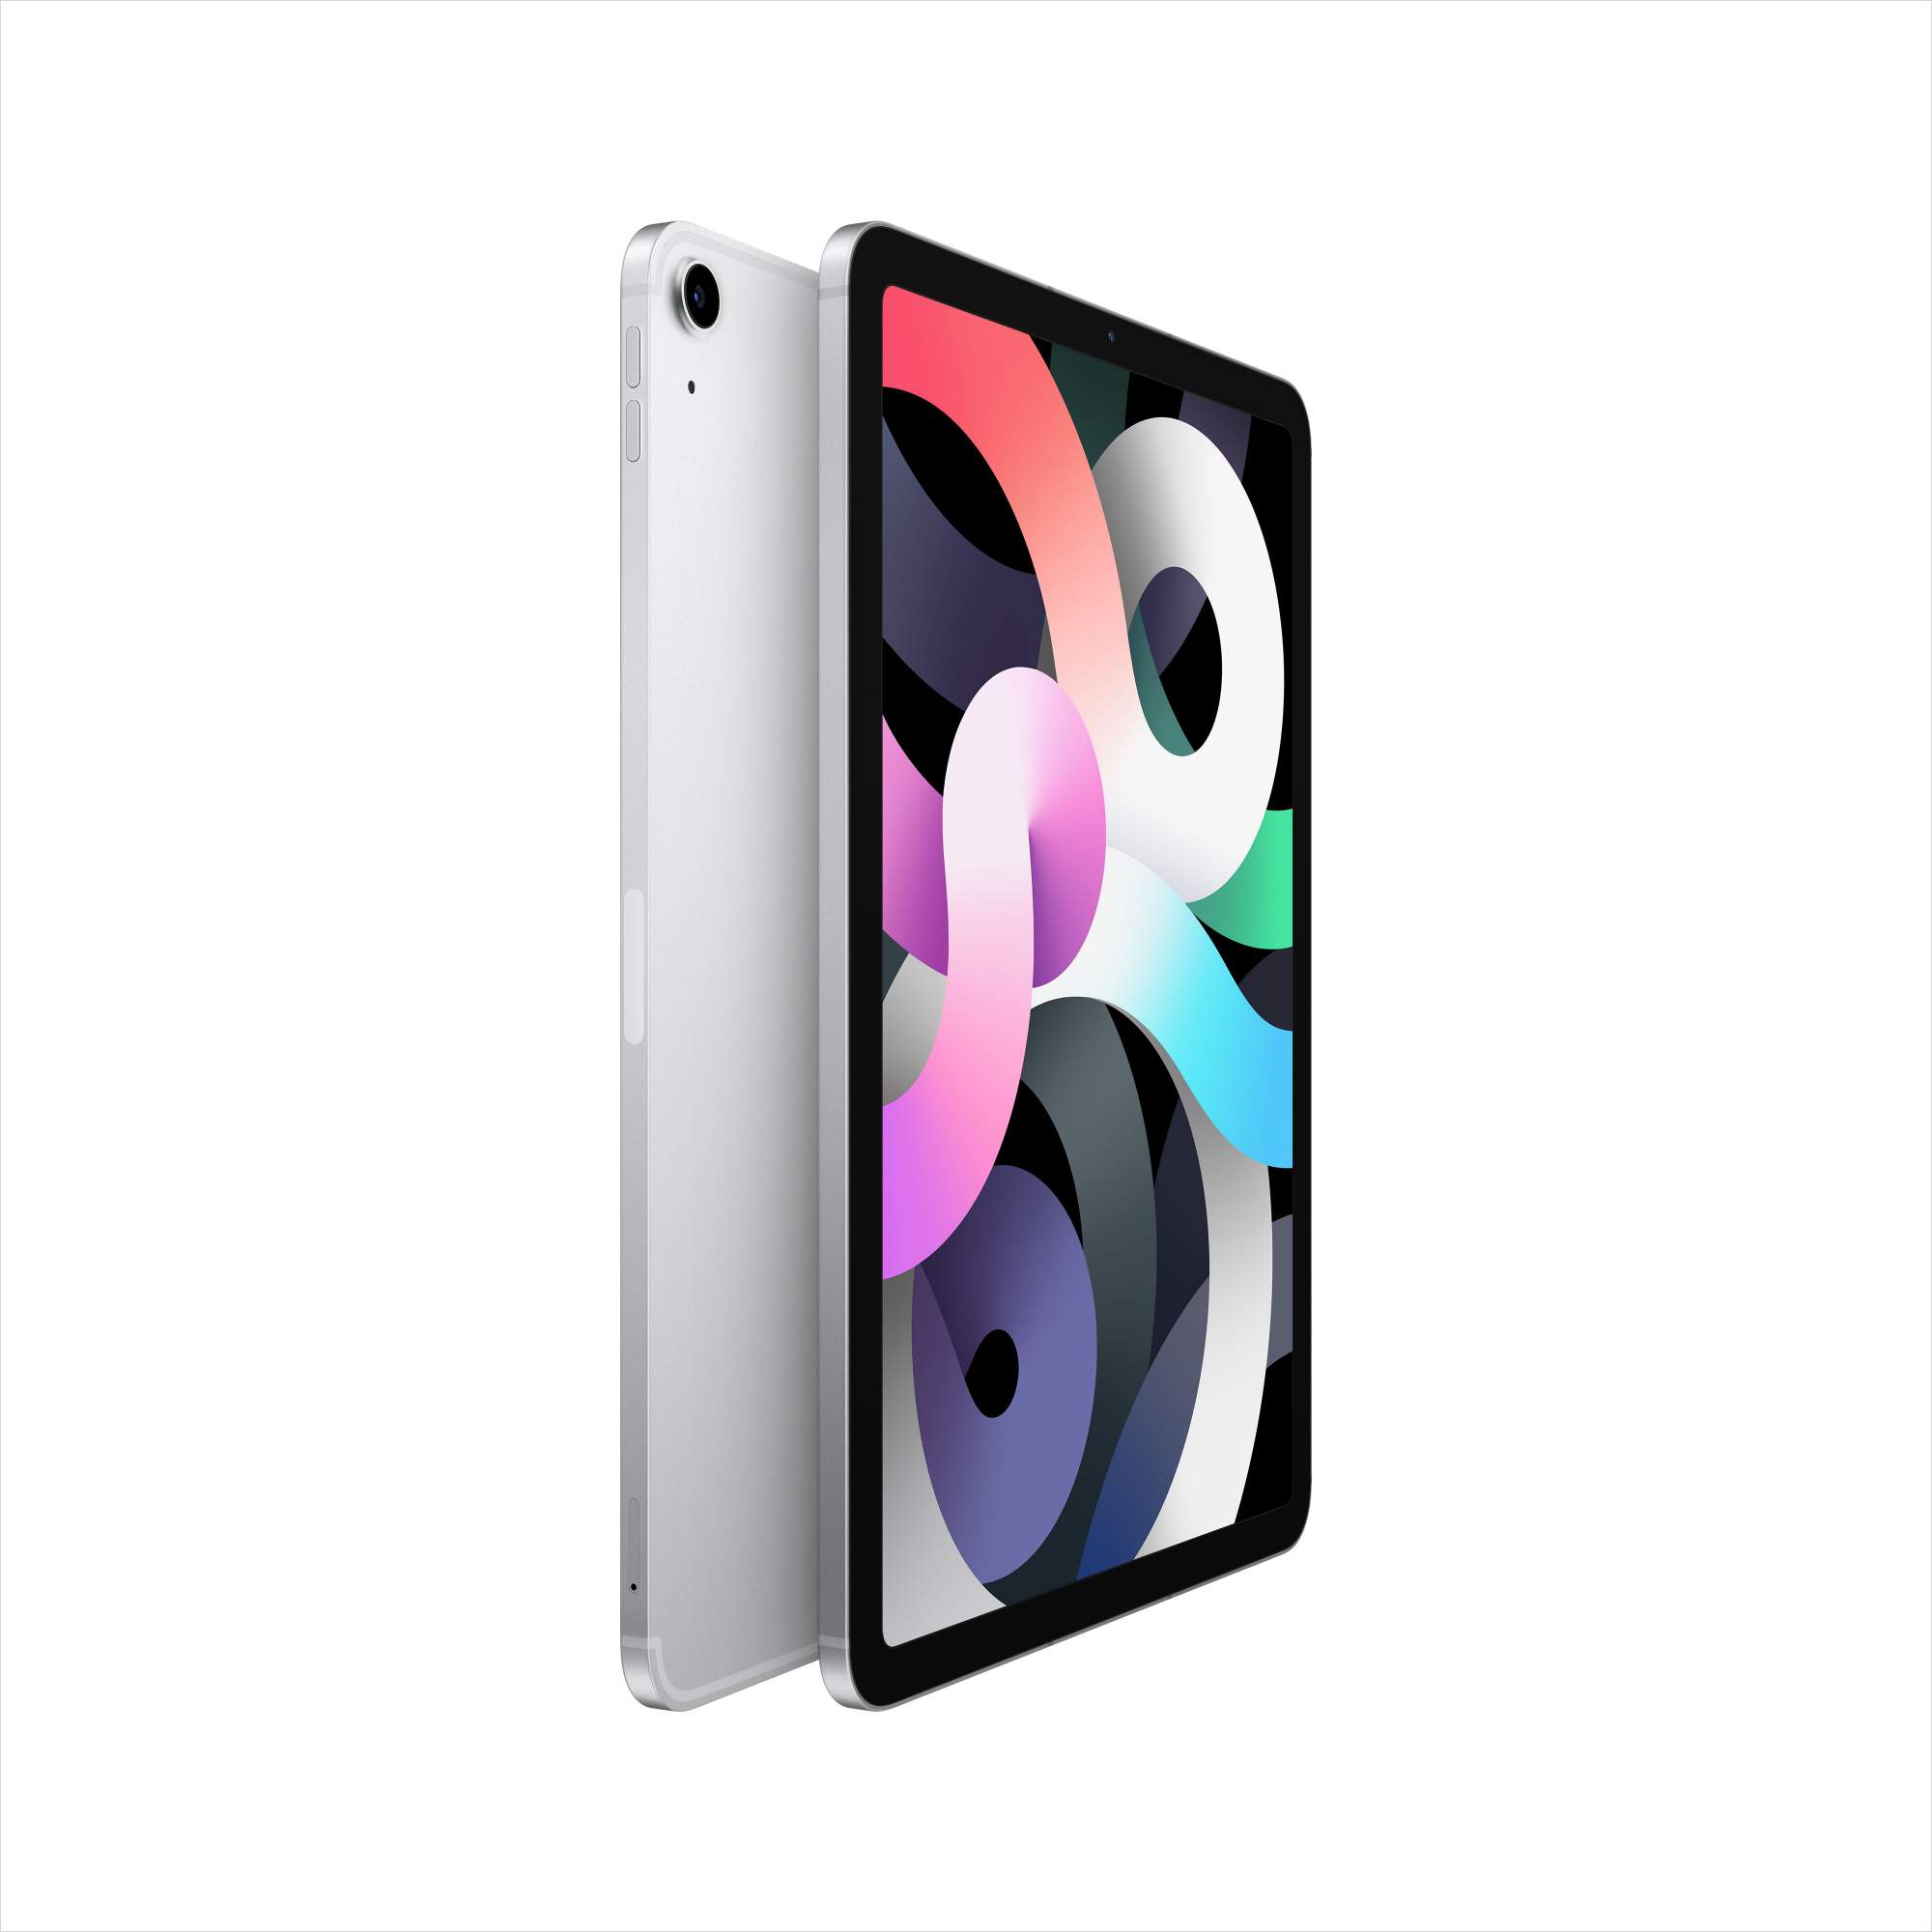 Планшет Apple iPad Air (2020) 64GB Wi-Fi+Cellular Silver (MYGX2RU/A)